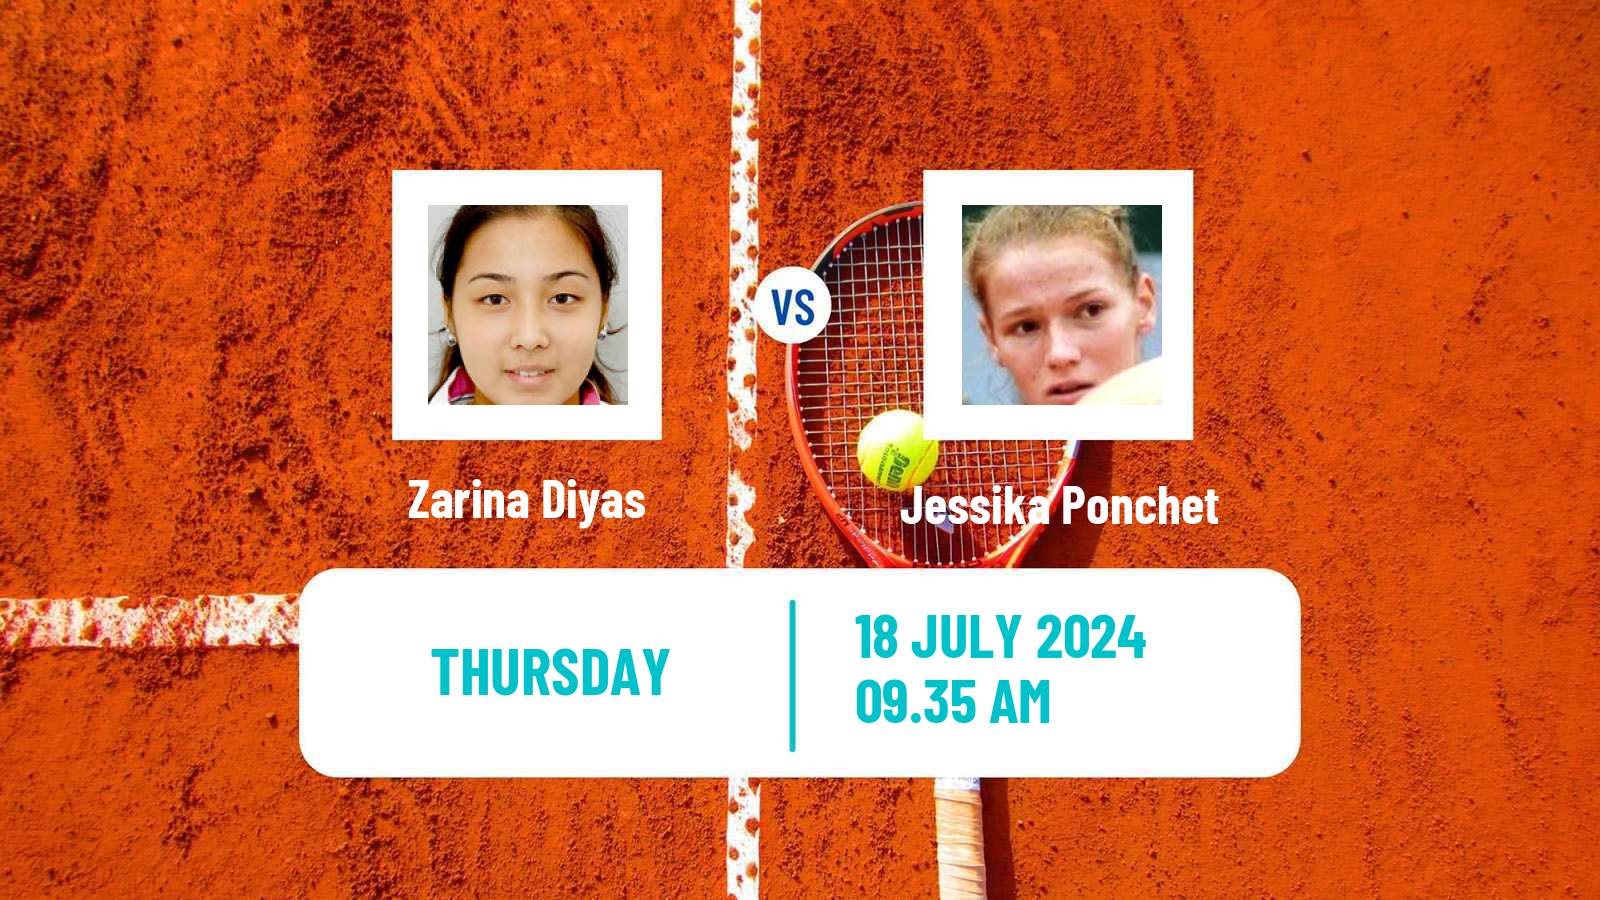 Tennis ITF W100 Vitoria Gasteiz Women Zarina Diyas - Jessika Ponchet